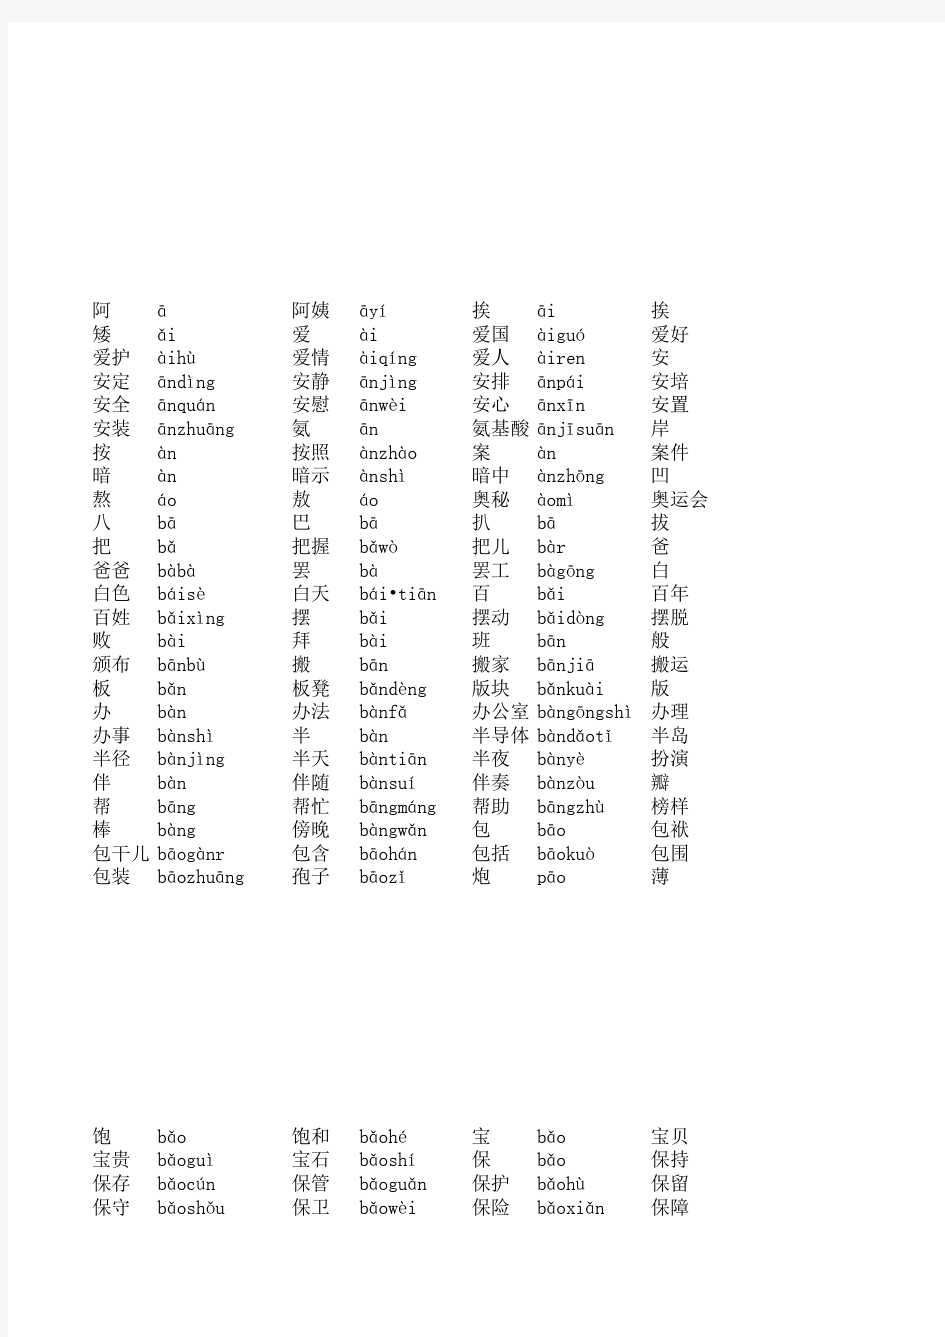 普通话水平测试用普通话词语表(表一+表二)